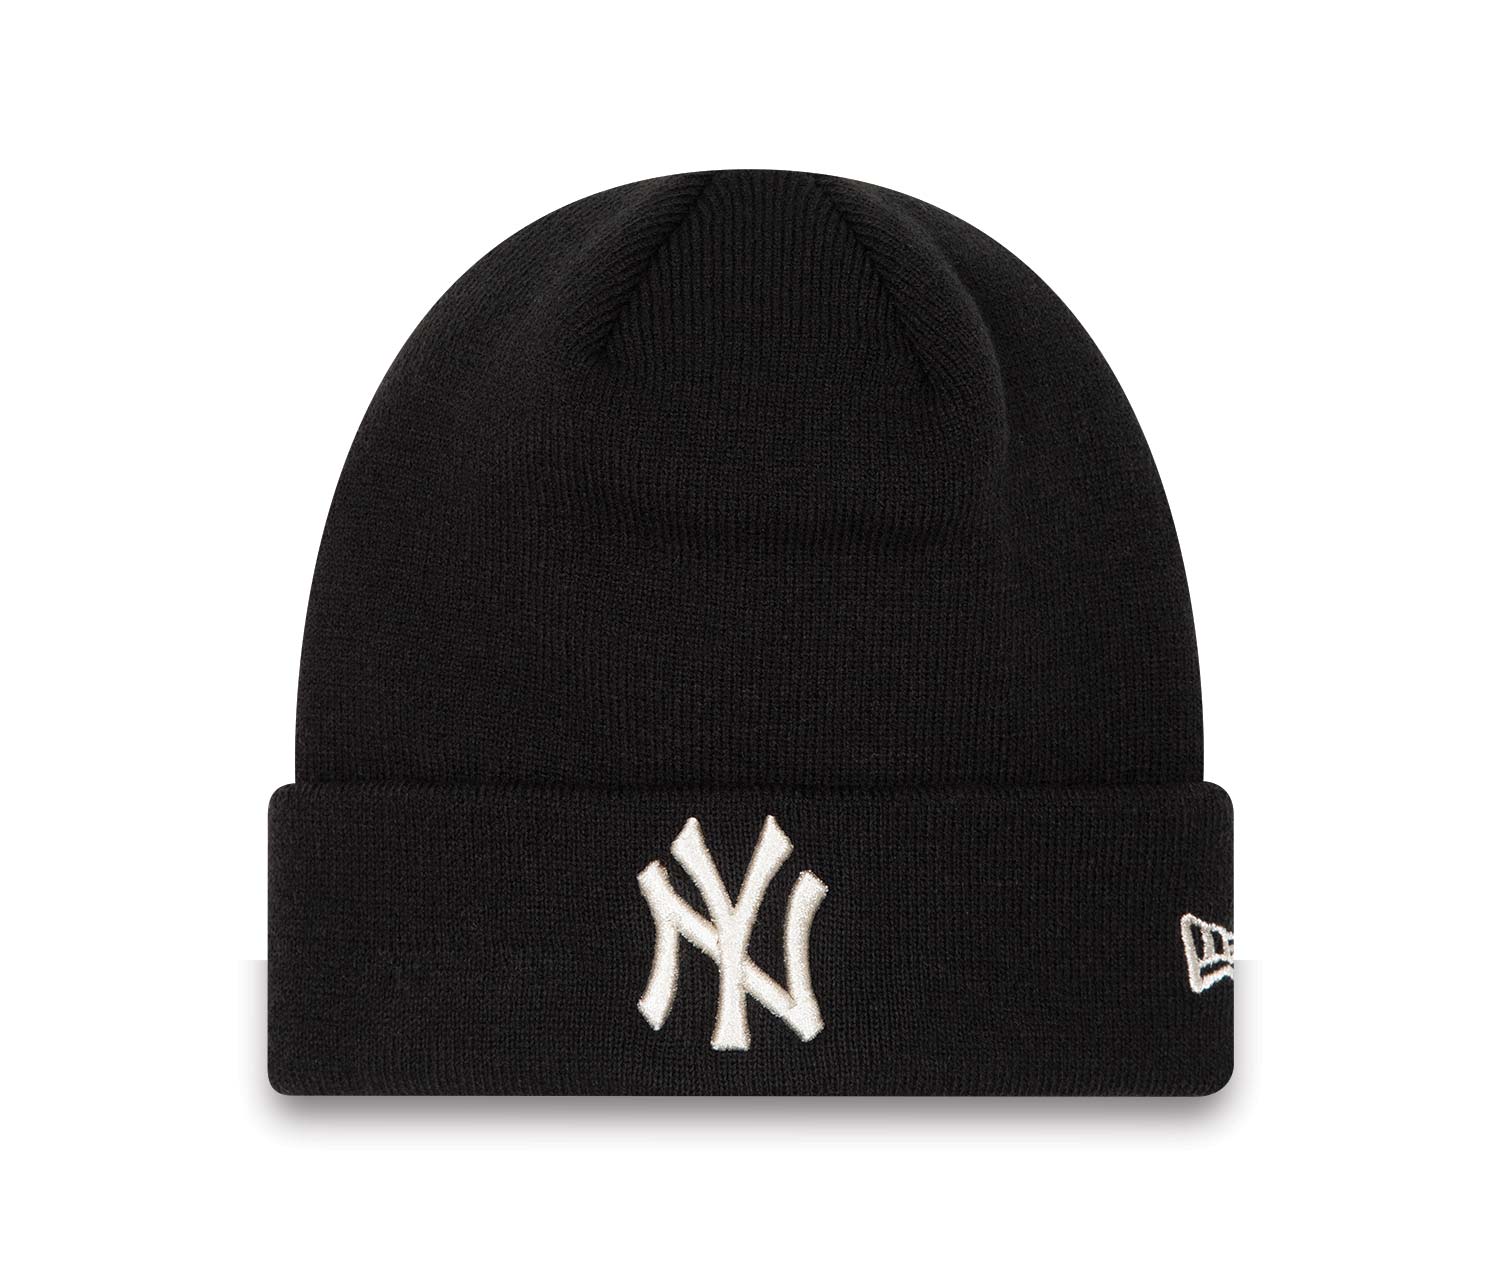 New York Yankees Womens Metallic Black Beanie Hat